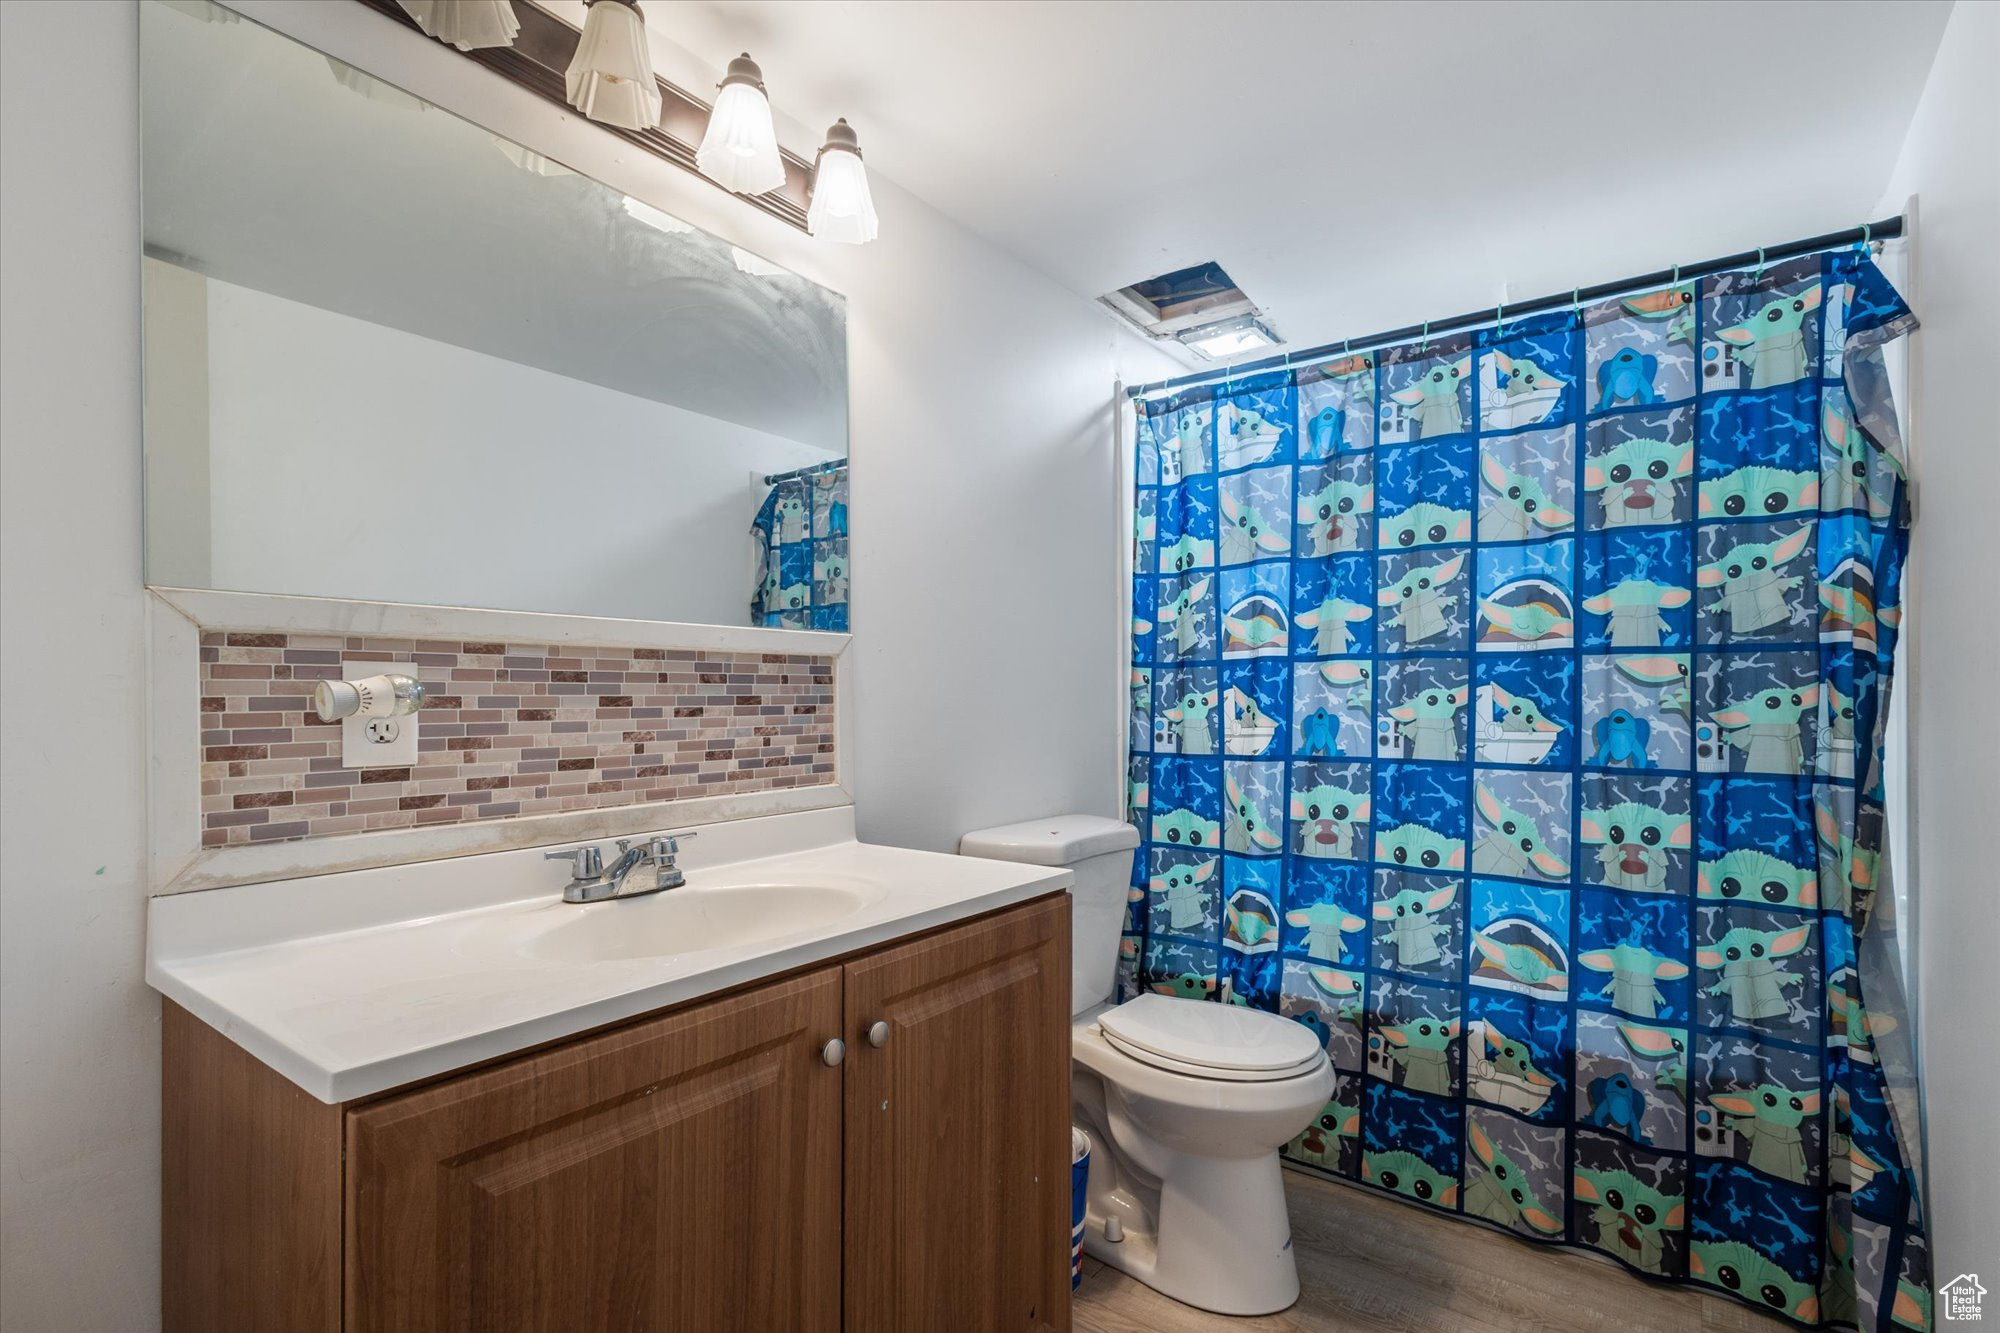 Bathroom featuring backsplash, vanity, hardwood / wood-style flooring, and toilet